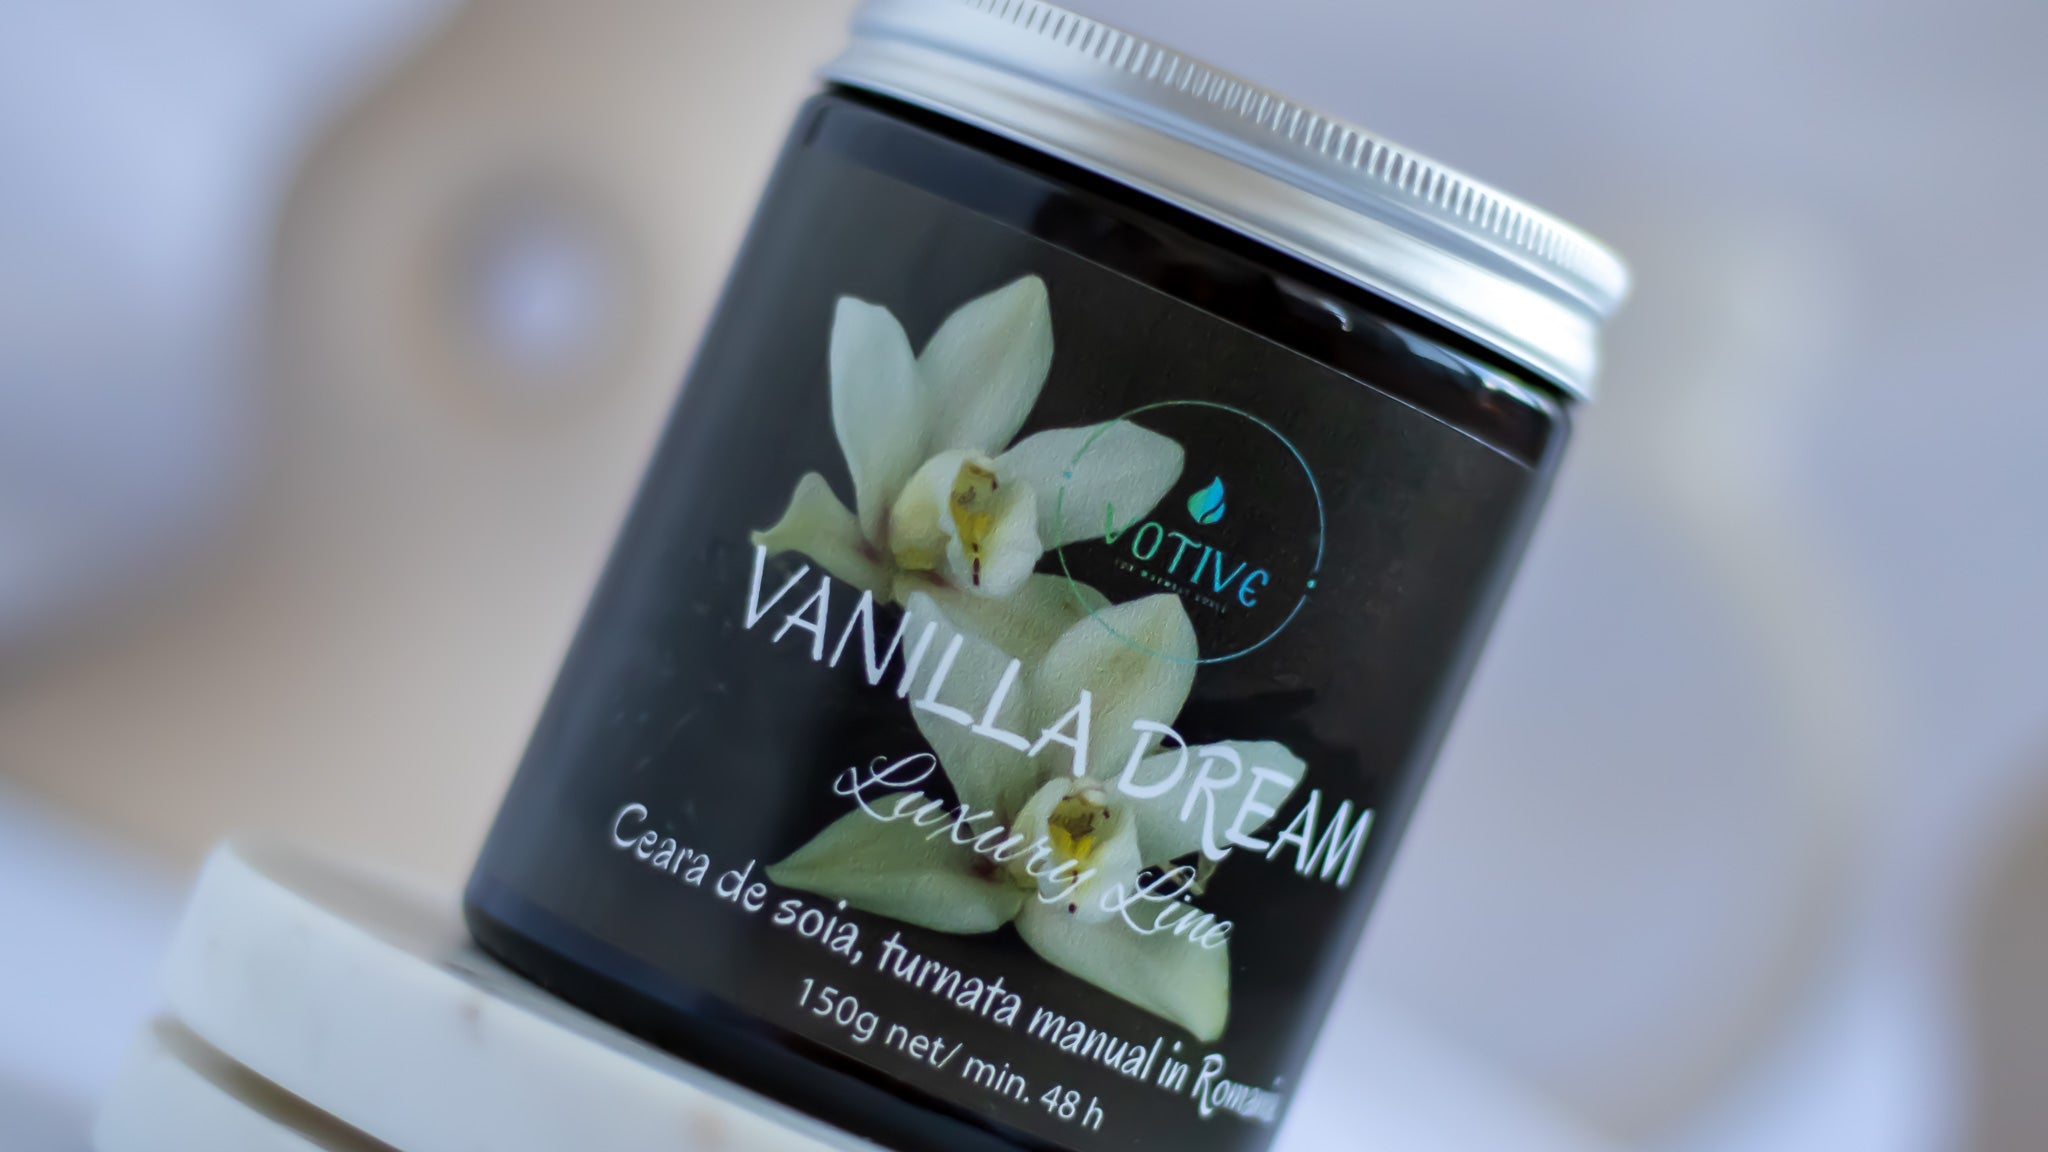 Lumânare parfumată Vanilla Dream, realizată manual, de la Votive